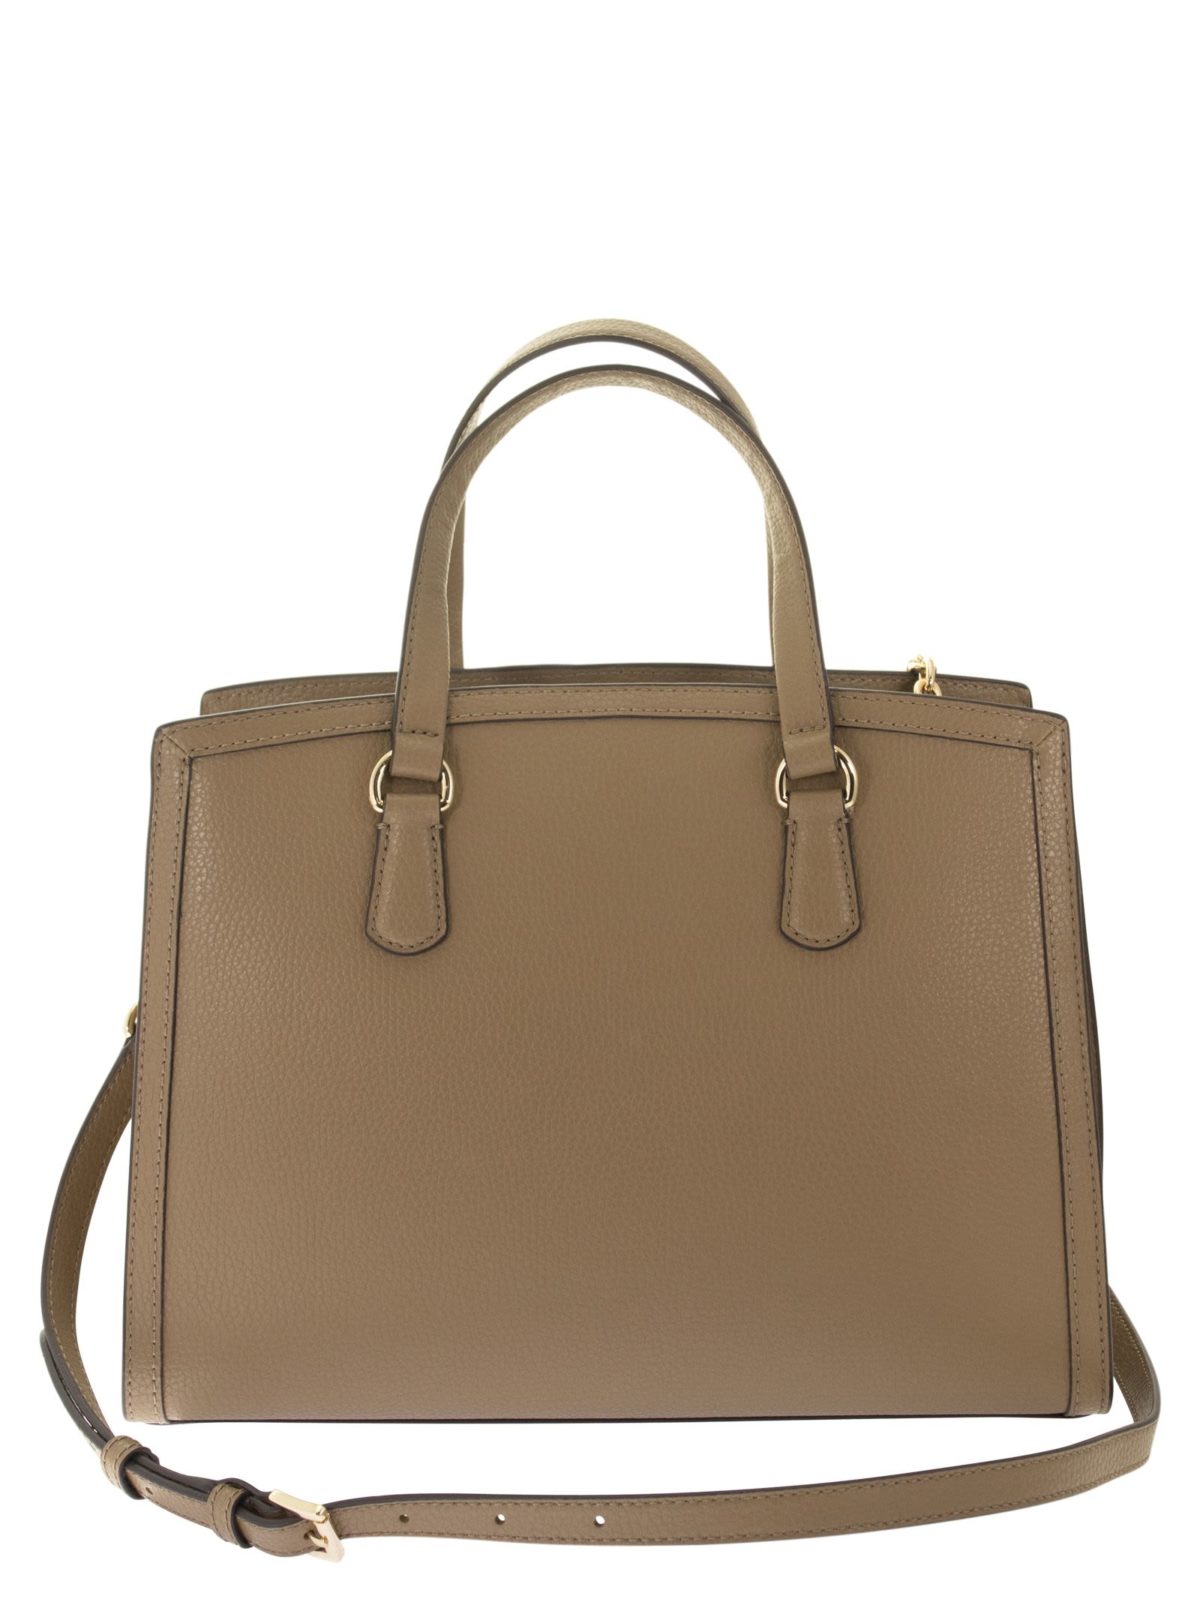 CHANTAL - Medium handbag - Bellettini.com